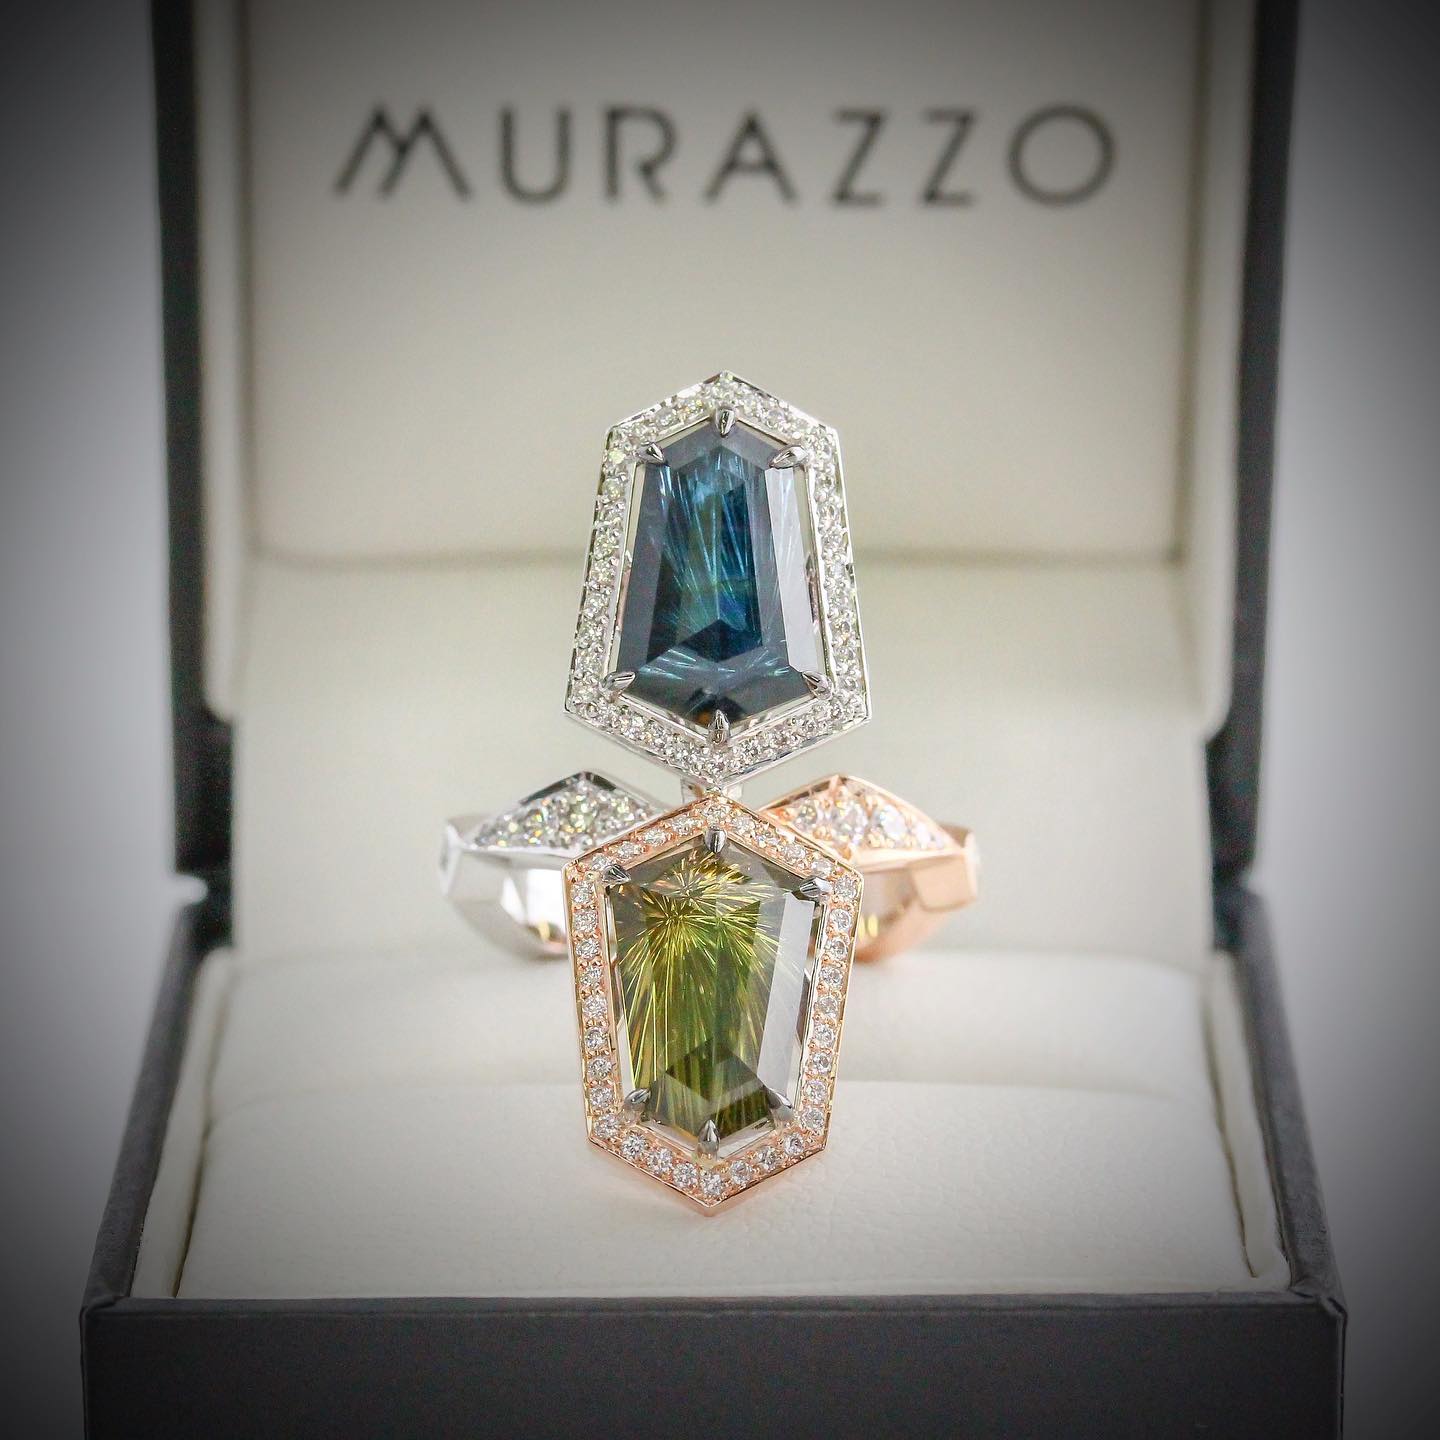 Murazzo Custom Jewels